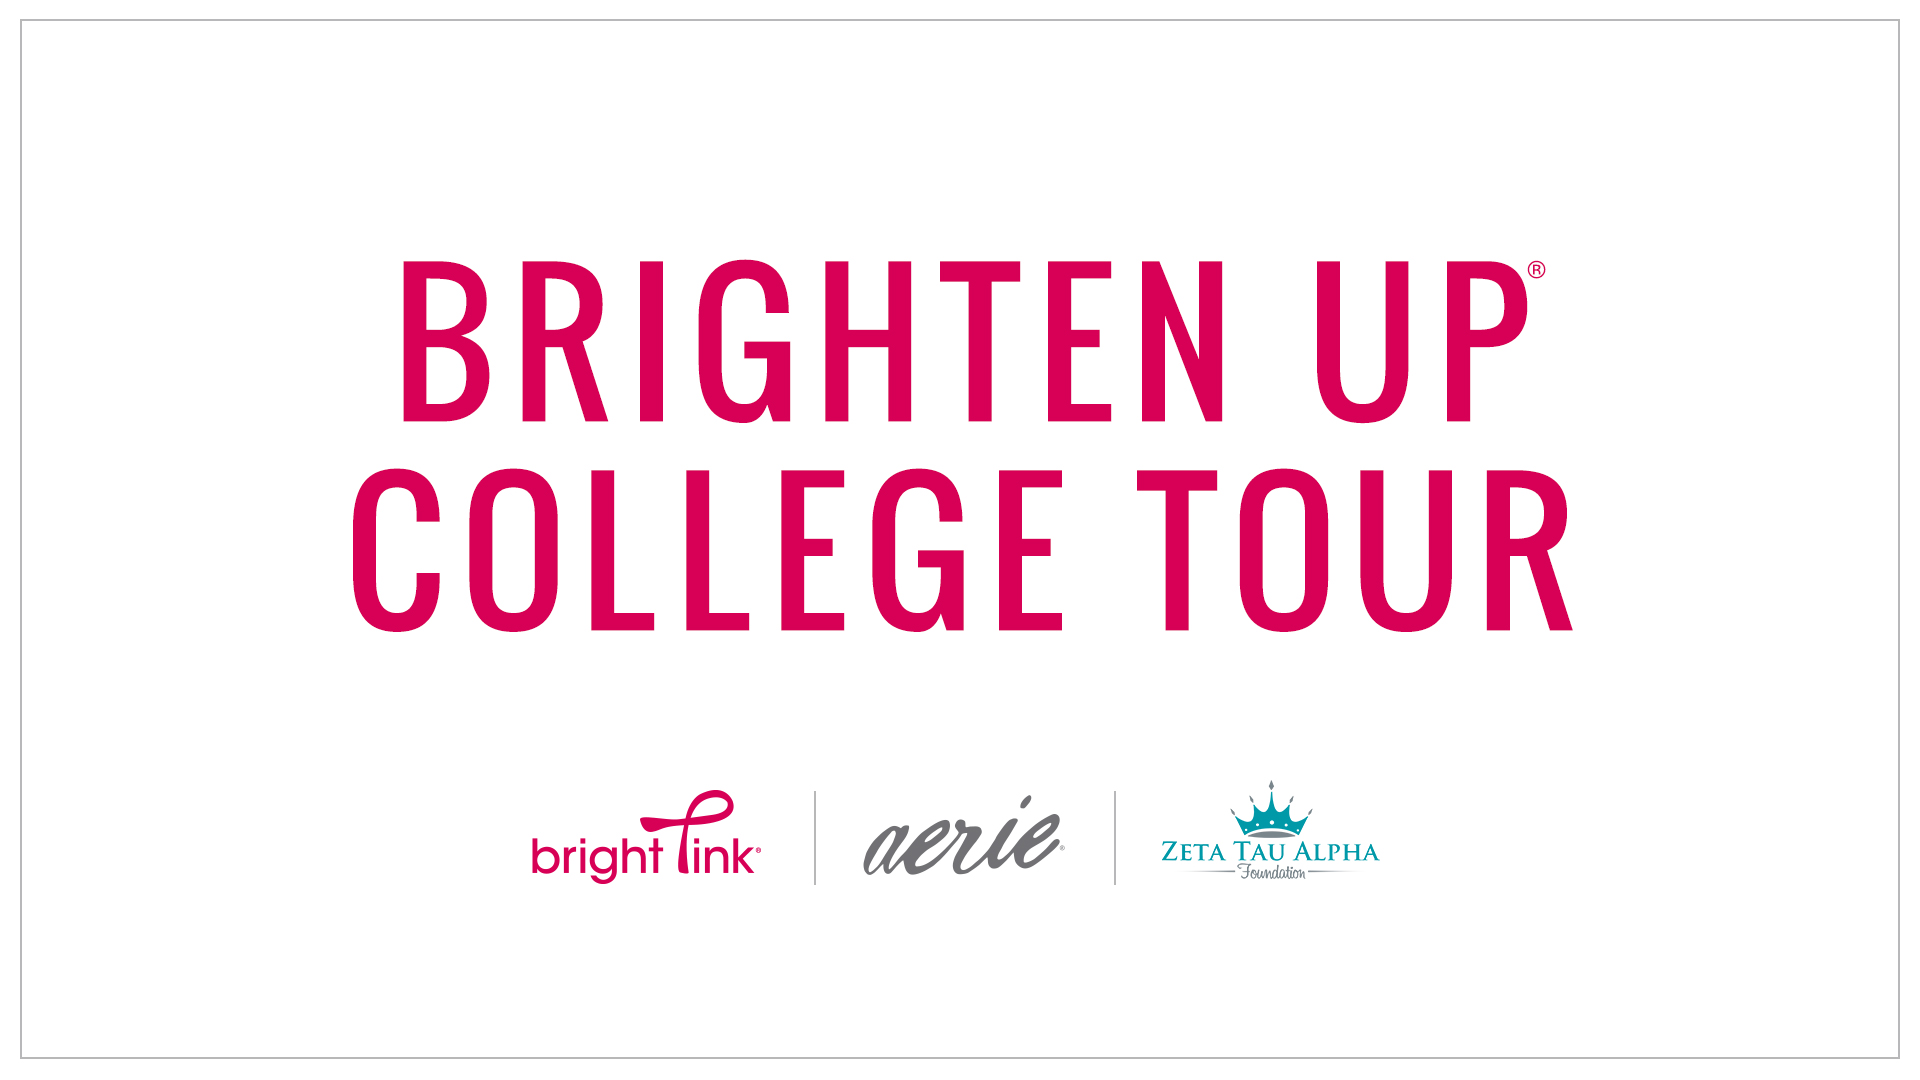 Brighten Up College Tour